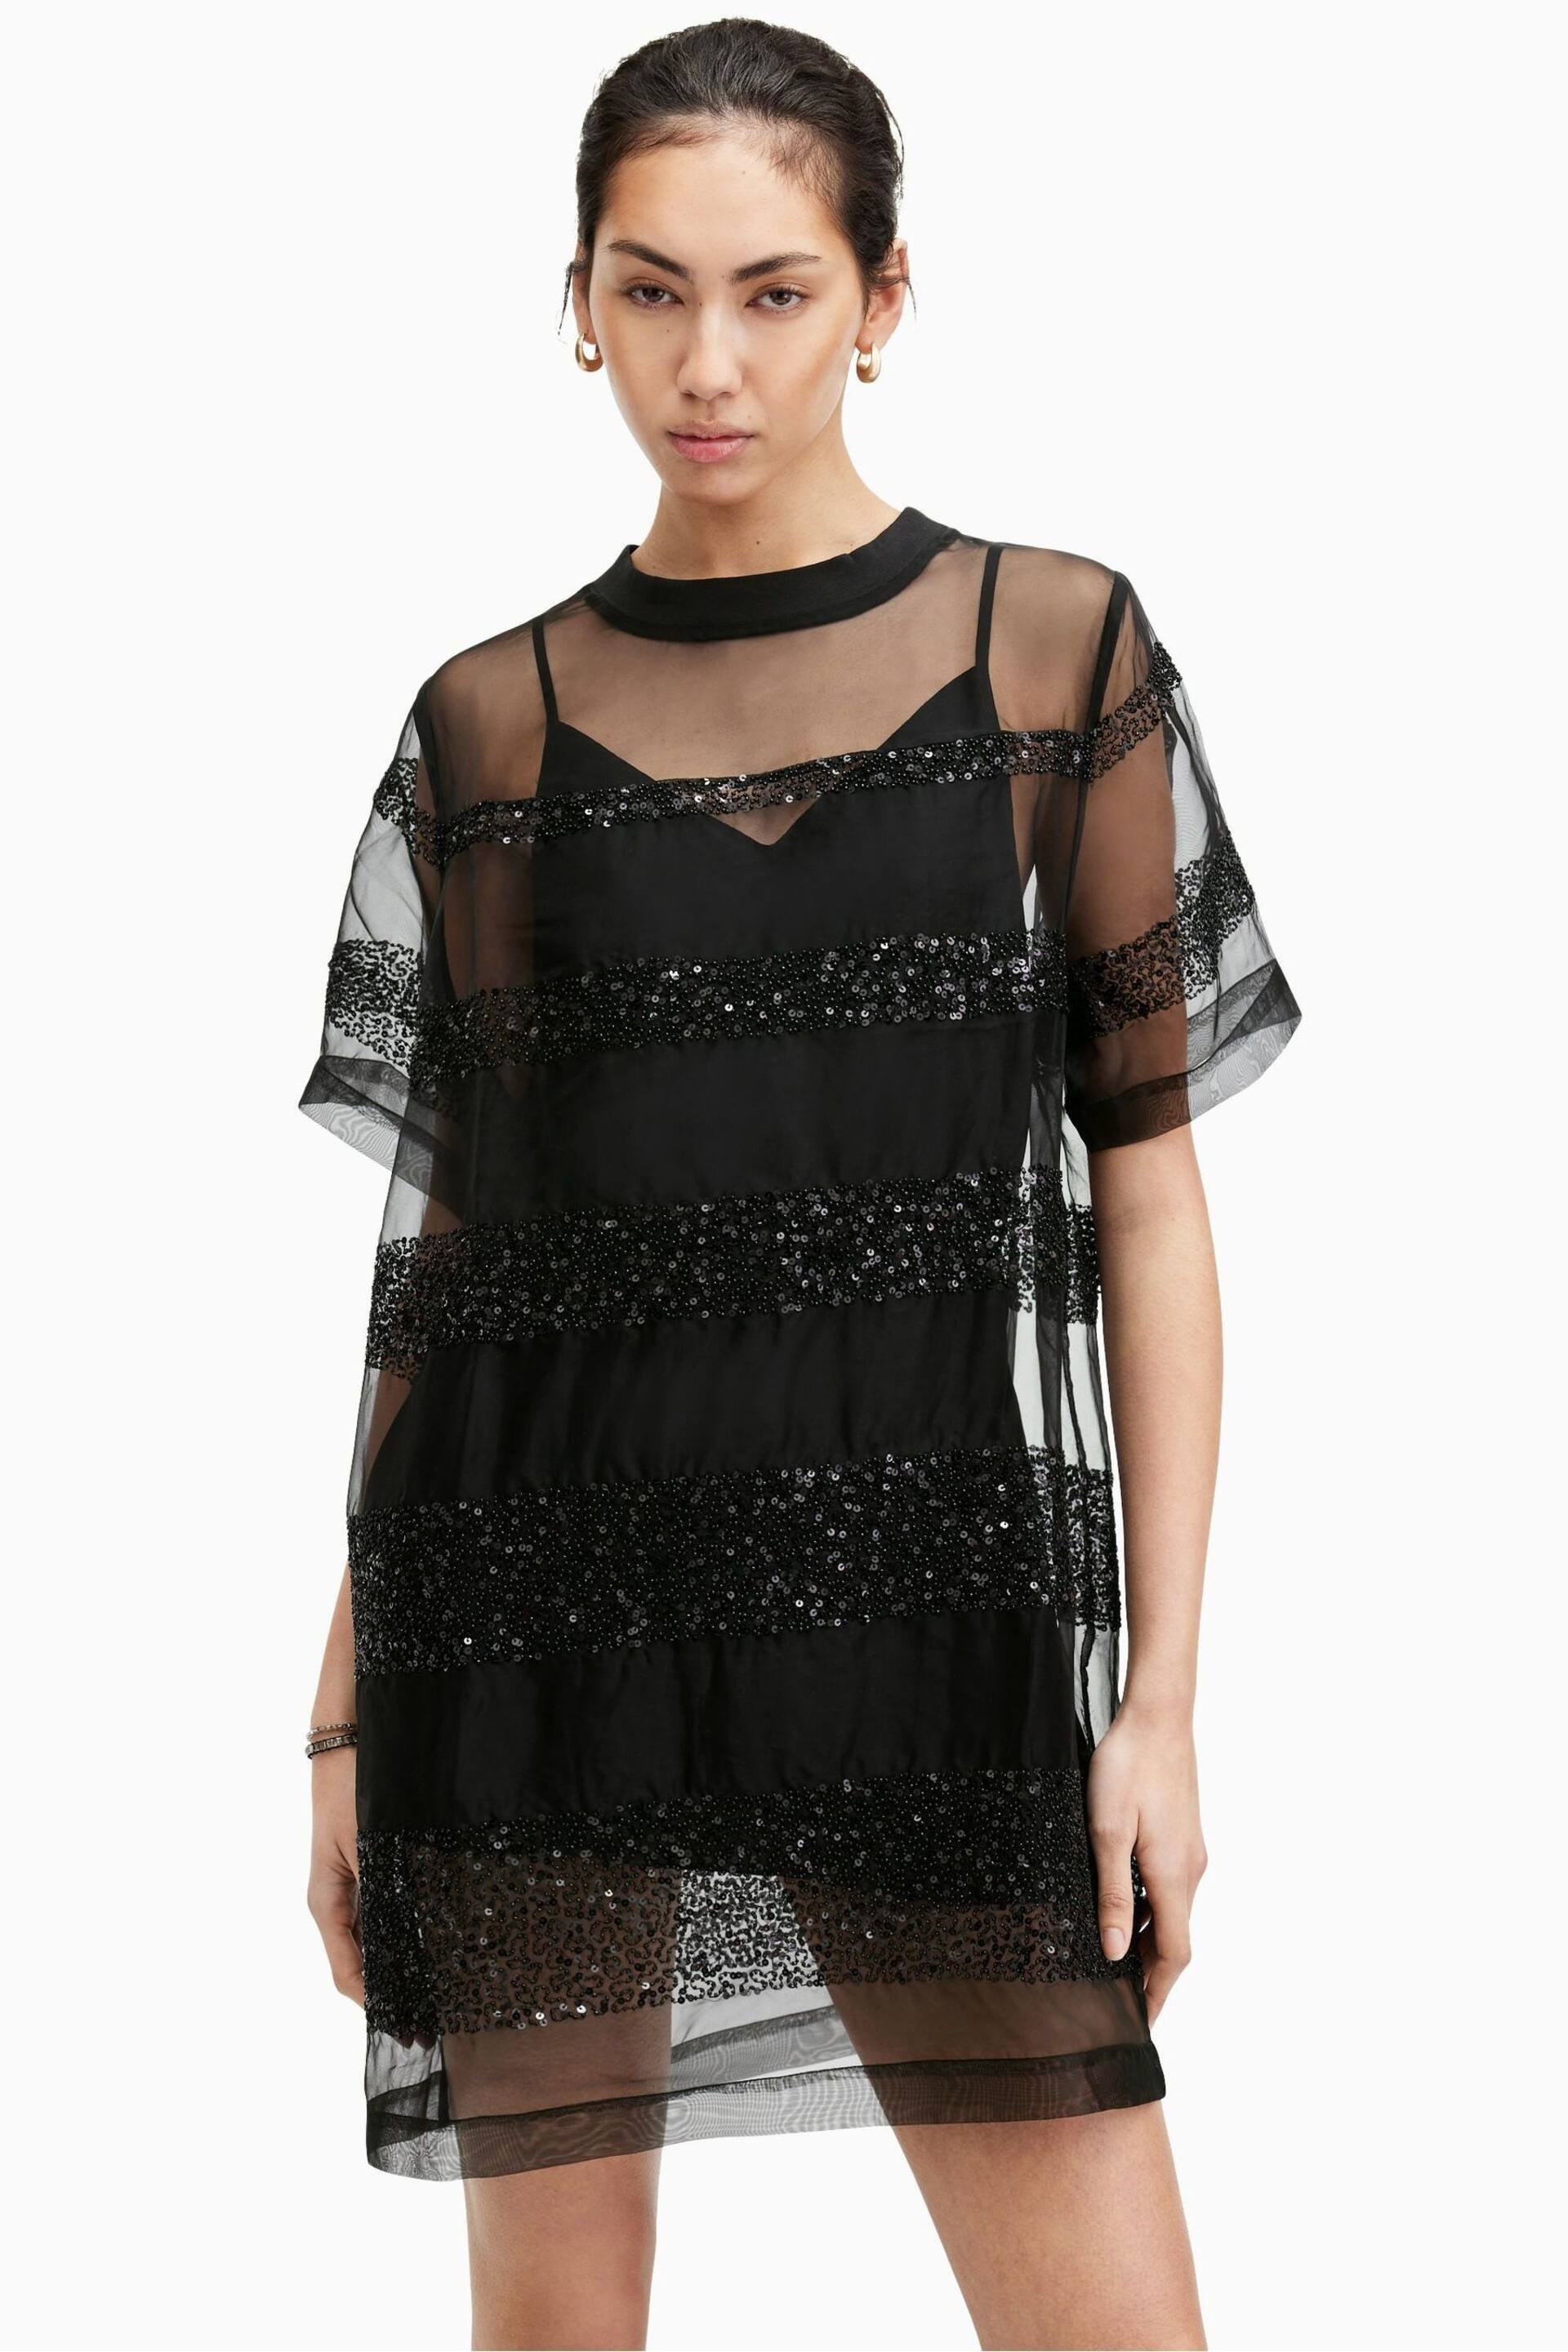 AllSaints Black Embroidered Izabela Dress - Image 1 of 7